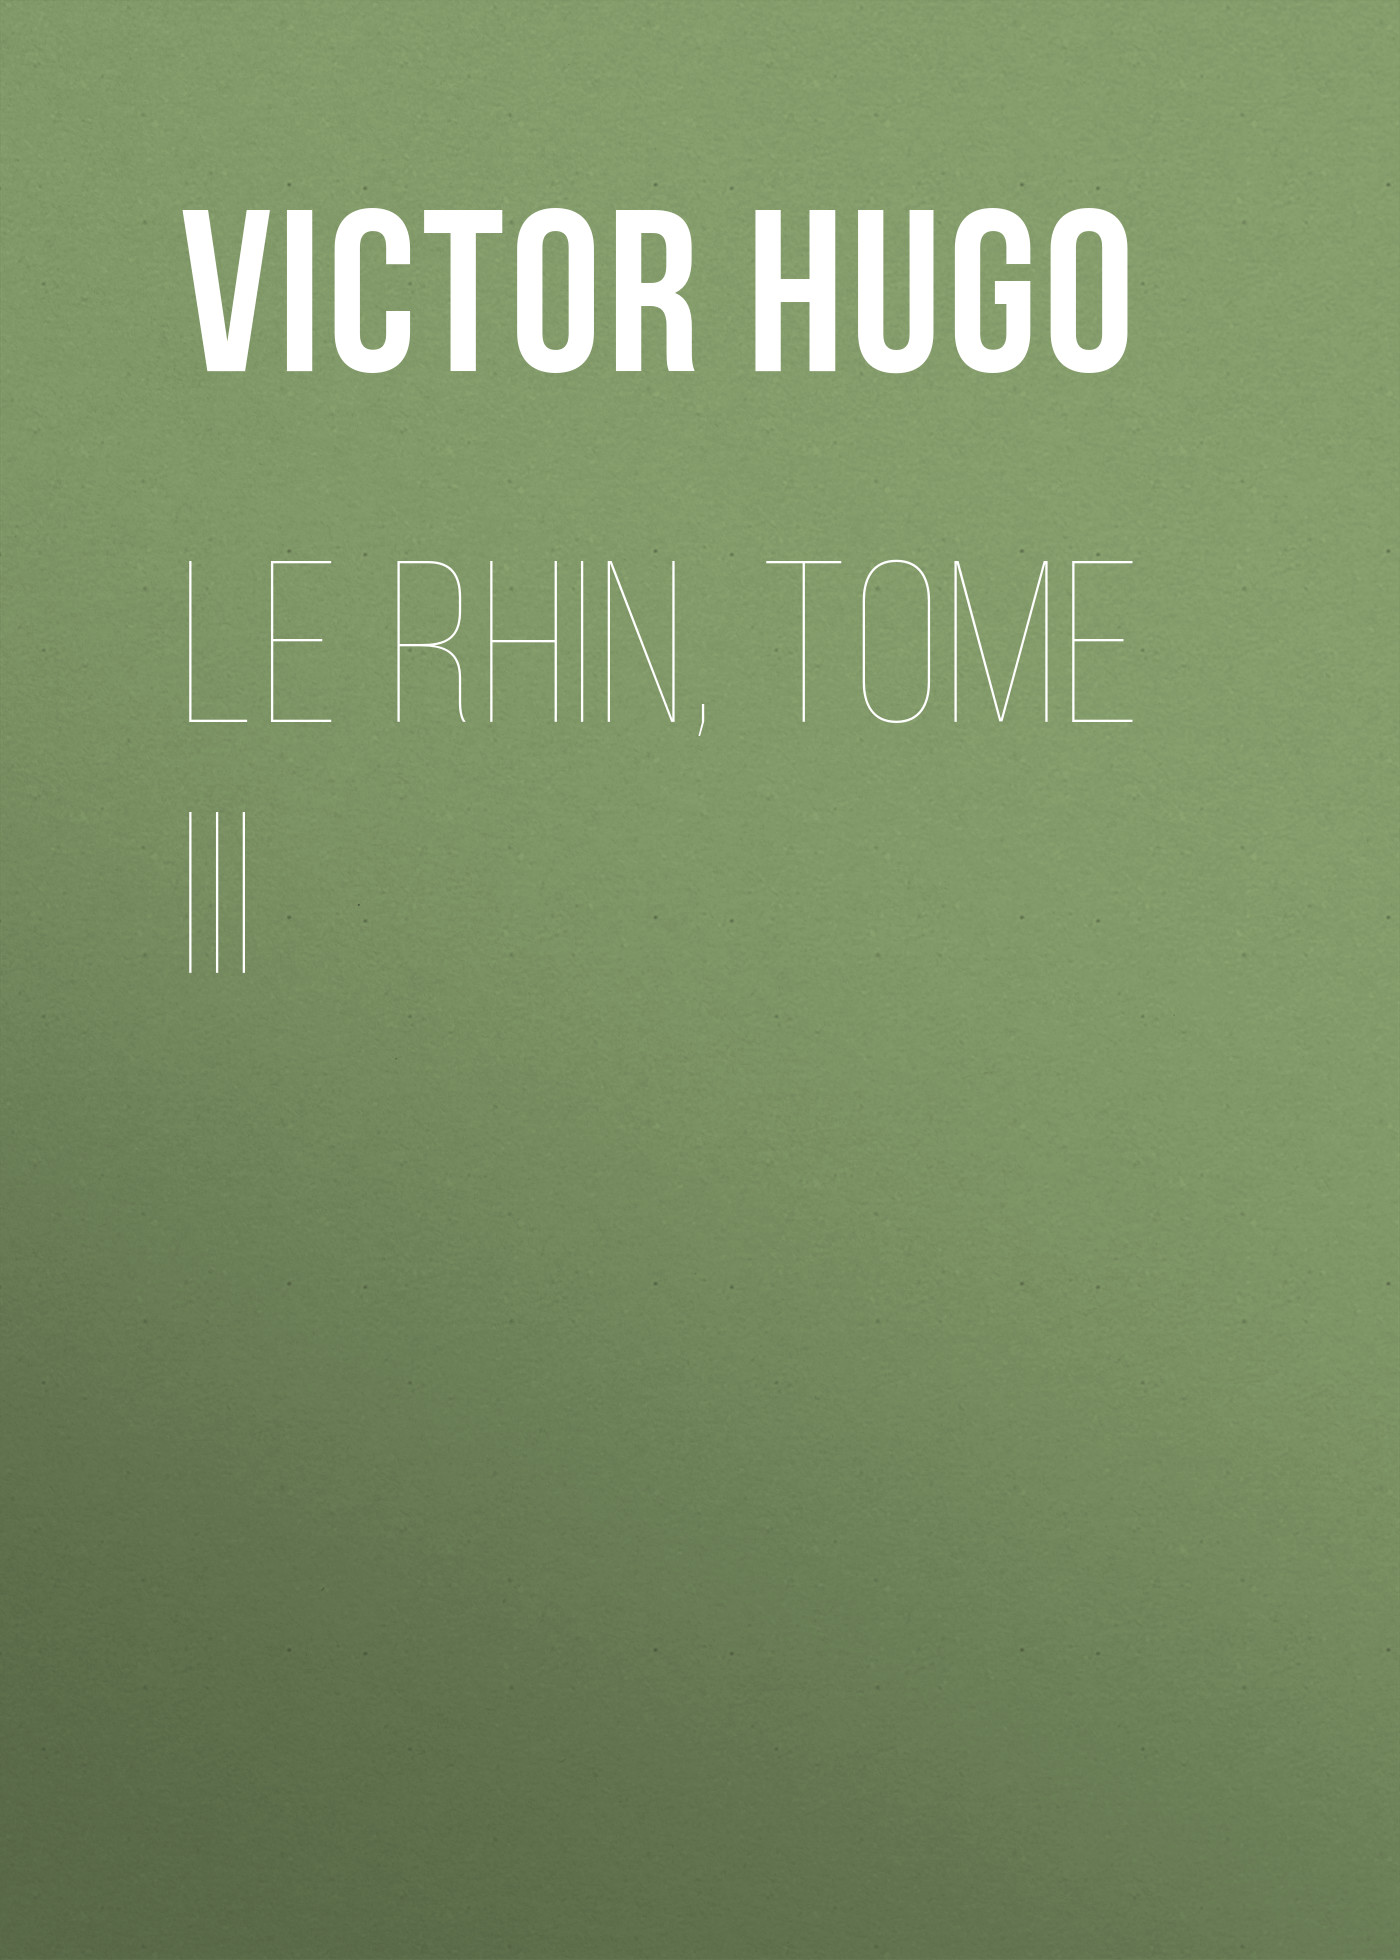 Книга Le Rhin, Tome III из серии , созданная Victor Hugo, может относится к жанру Литература 19 века, Зарубежная старинная литература, Зарубежная классика. Стоимость электронной книги Le Rhin, Tome III с идентификатором 25230300 составляет 0 руб.